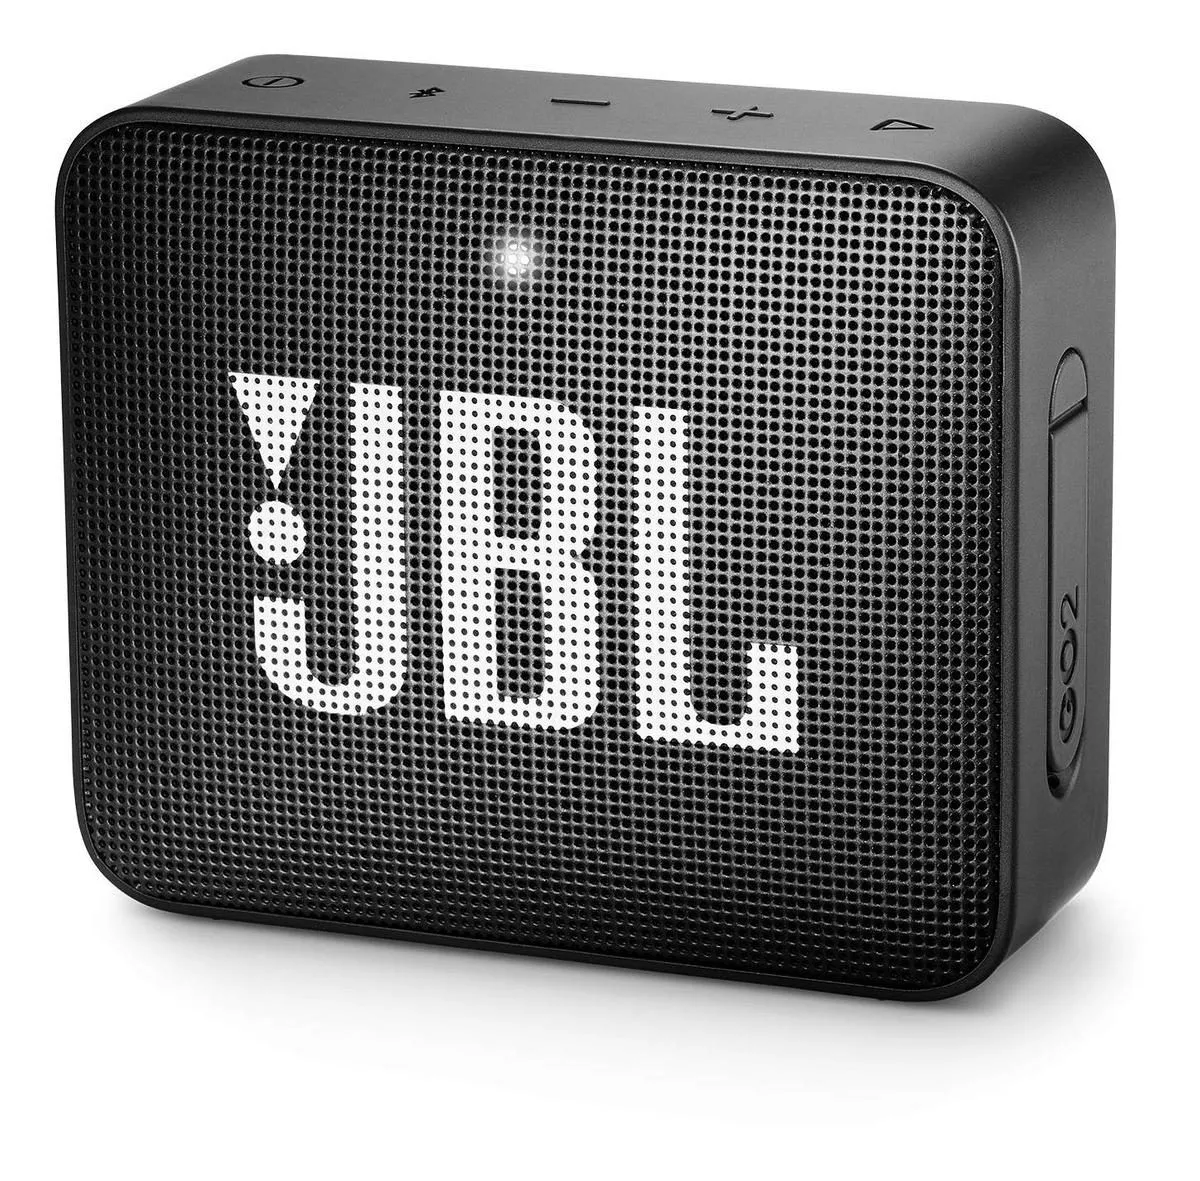 Bocina Jbl Go 2 Portátil Con Bluetooth Midnight Black 110v/220v 